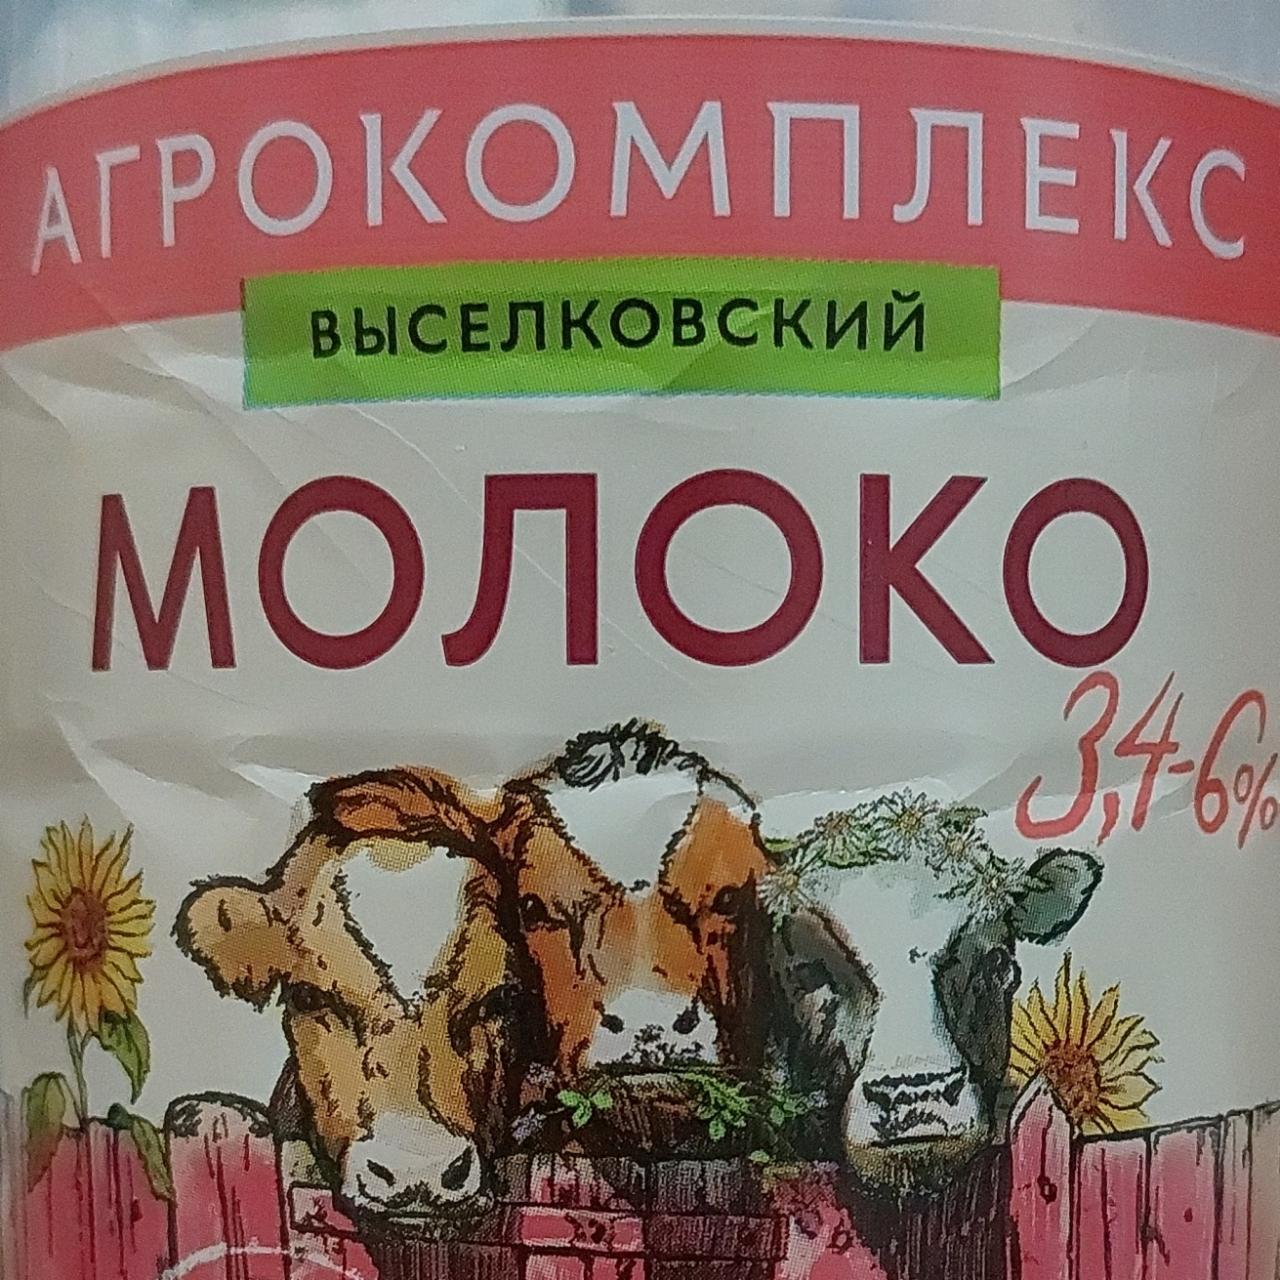 Фото - Молоко 3.4-6% Агрокомплекс Выселковский